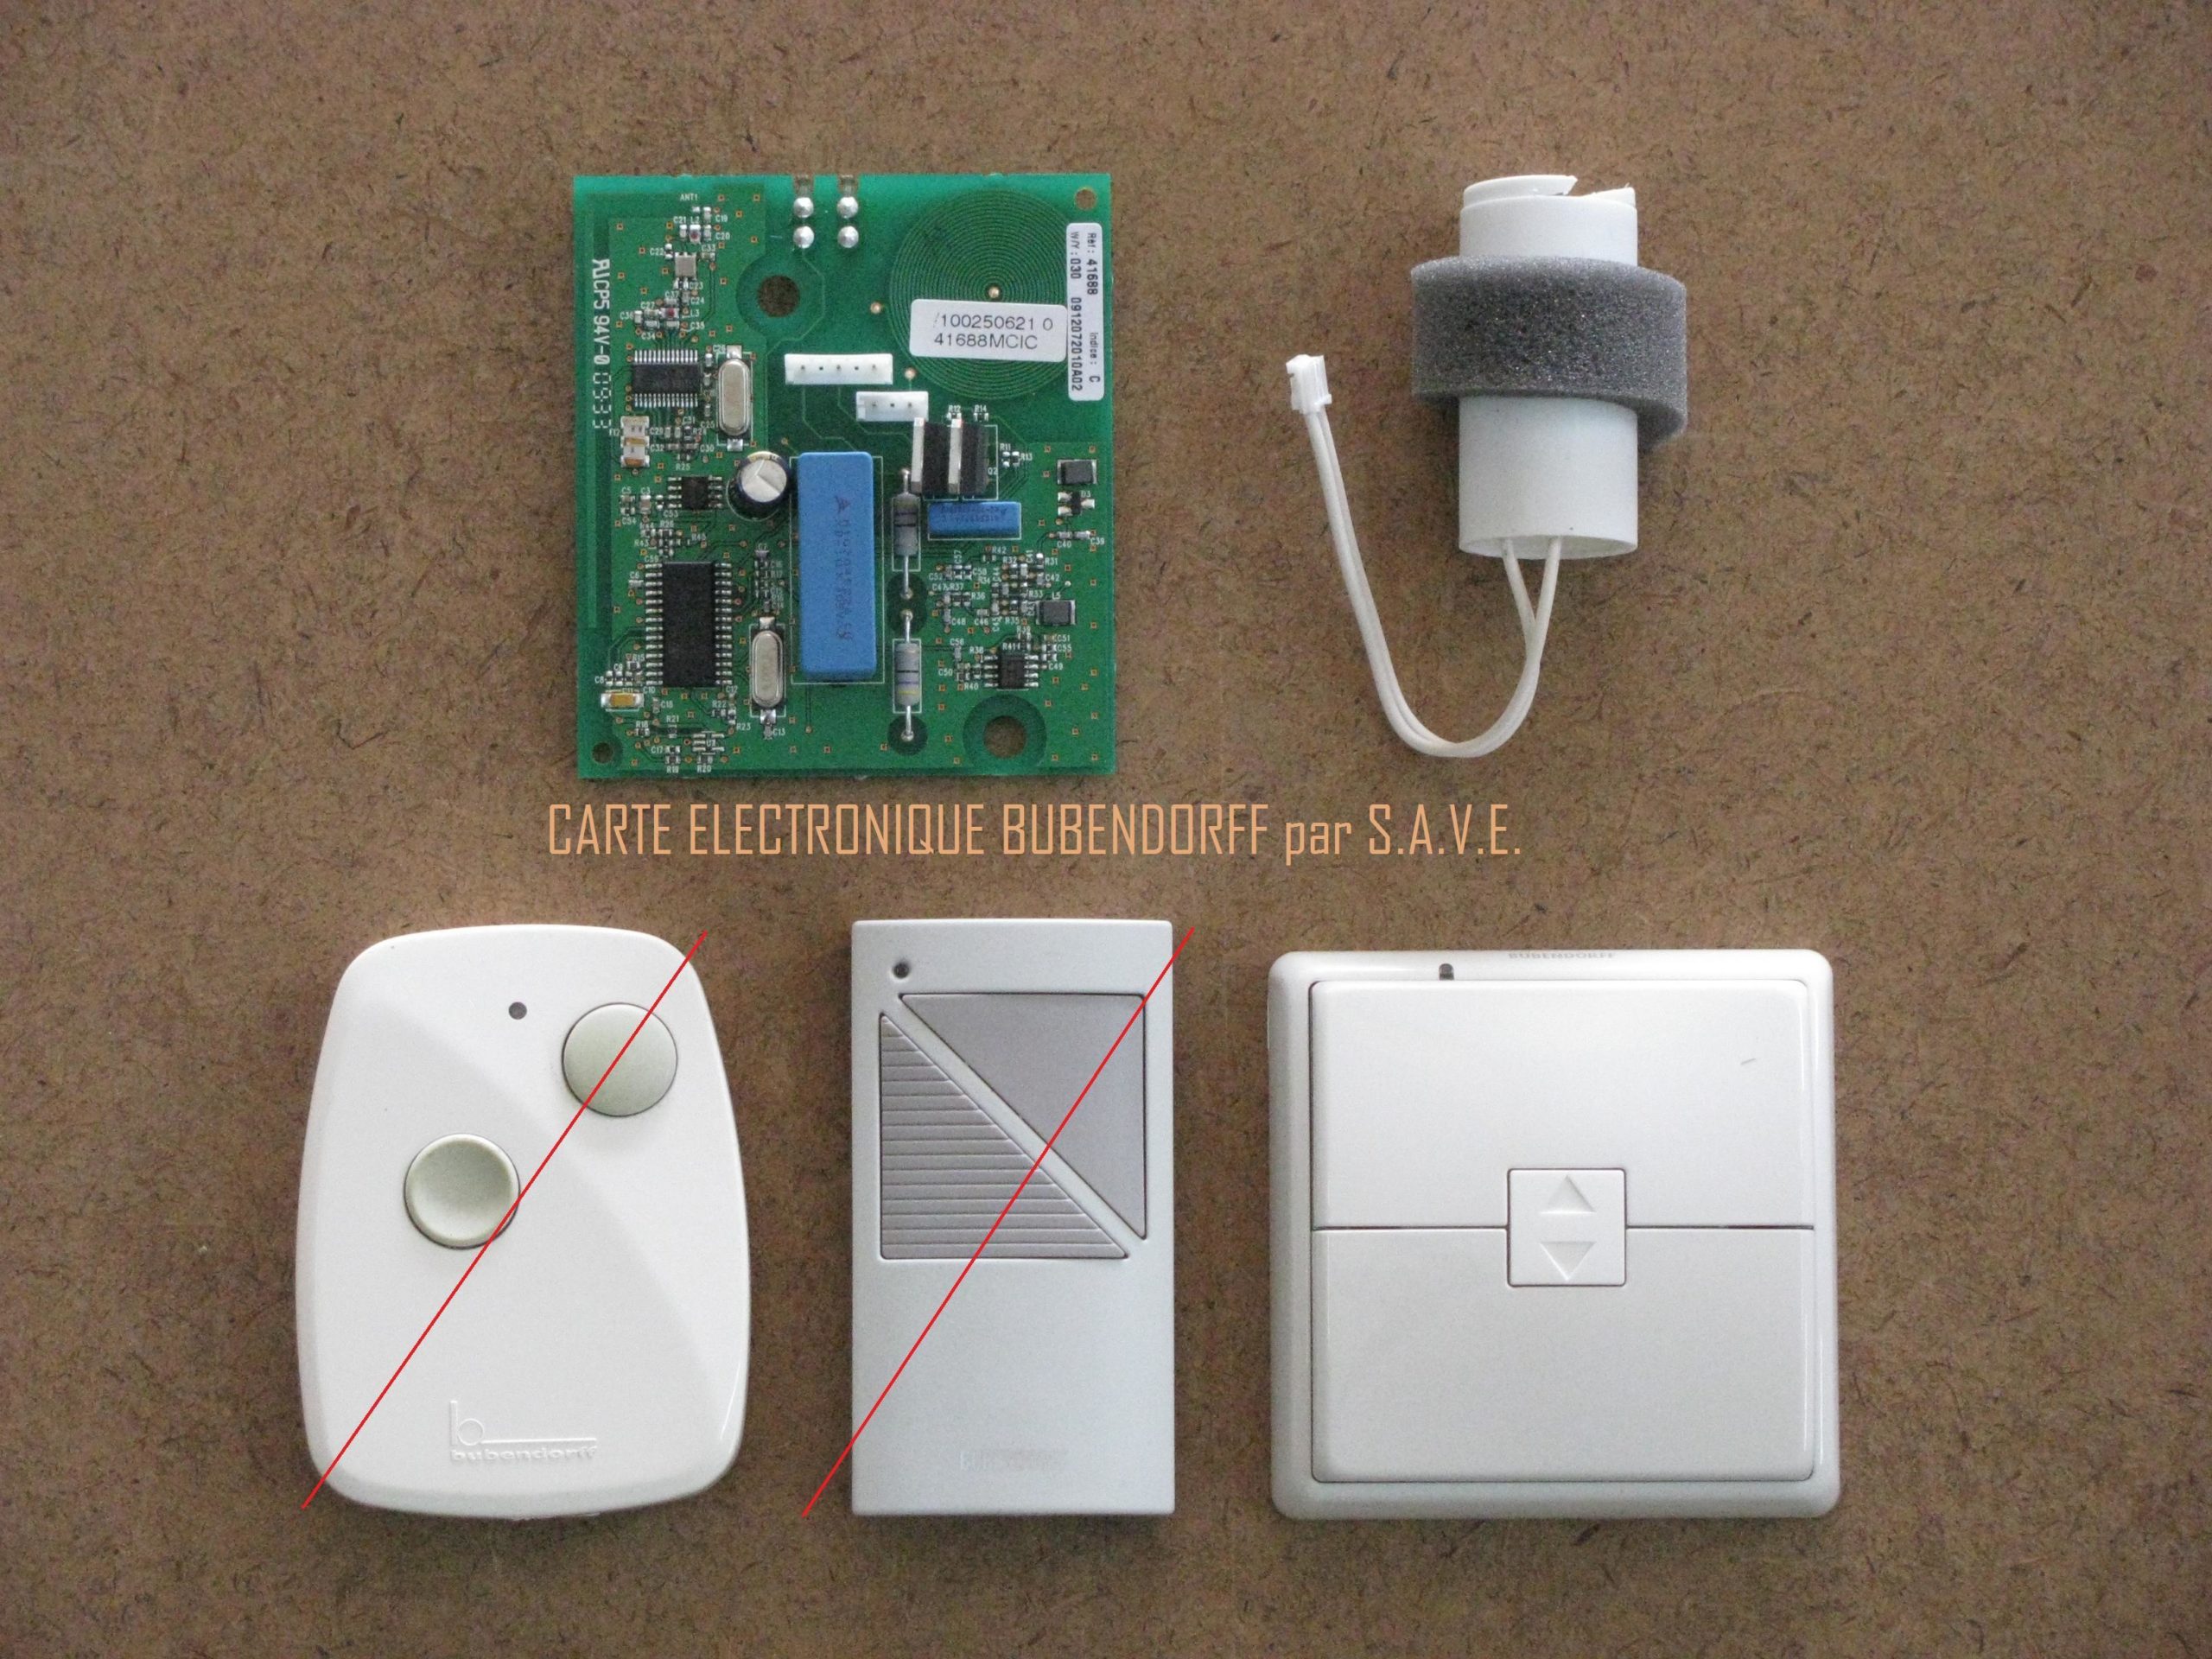 Support de pile CR2430 pour télécommande volet Bubendorff V0 / V1 - Ma  Carte Électronique